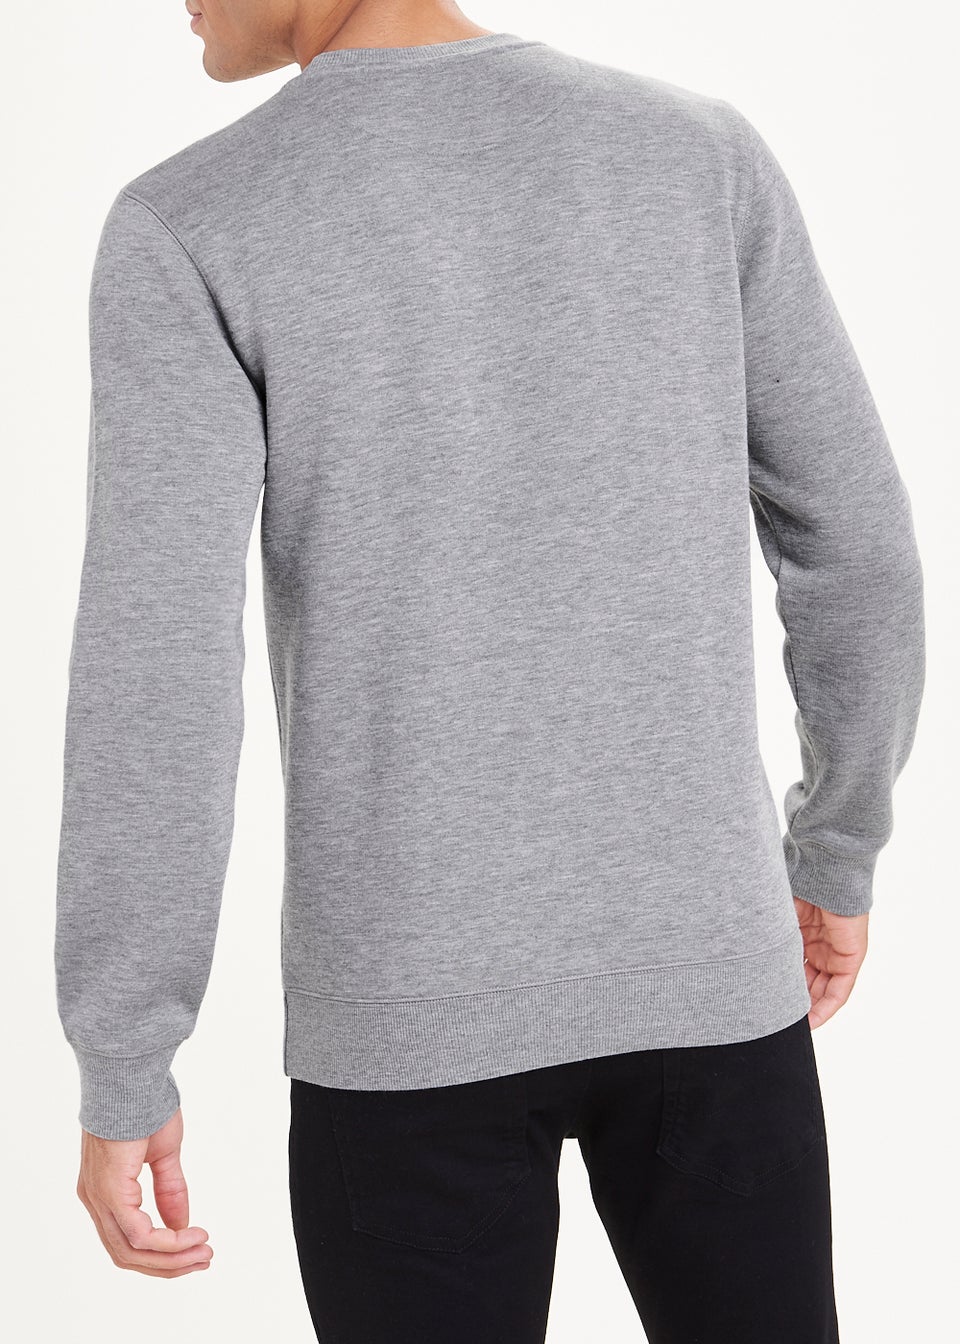 Grey Essential Crew Neck Sweatshirt